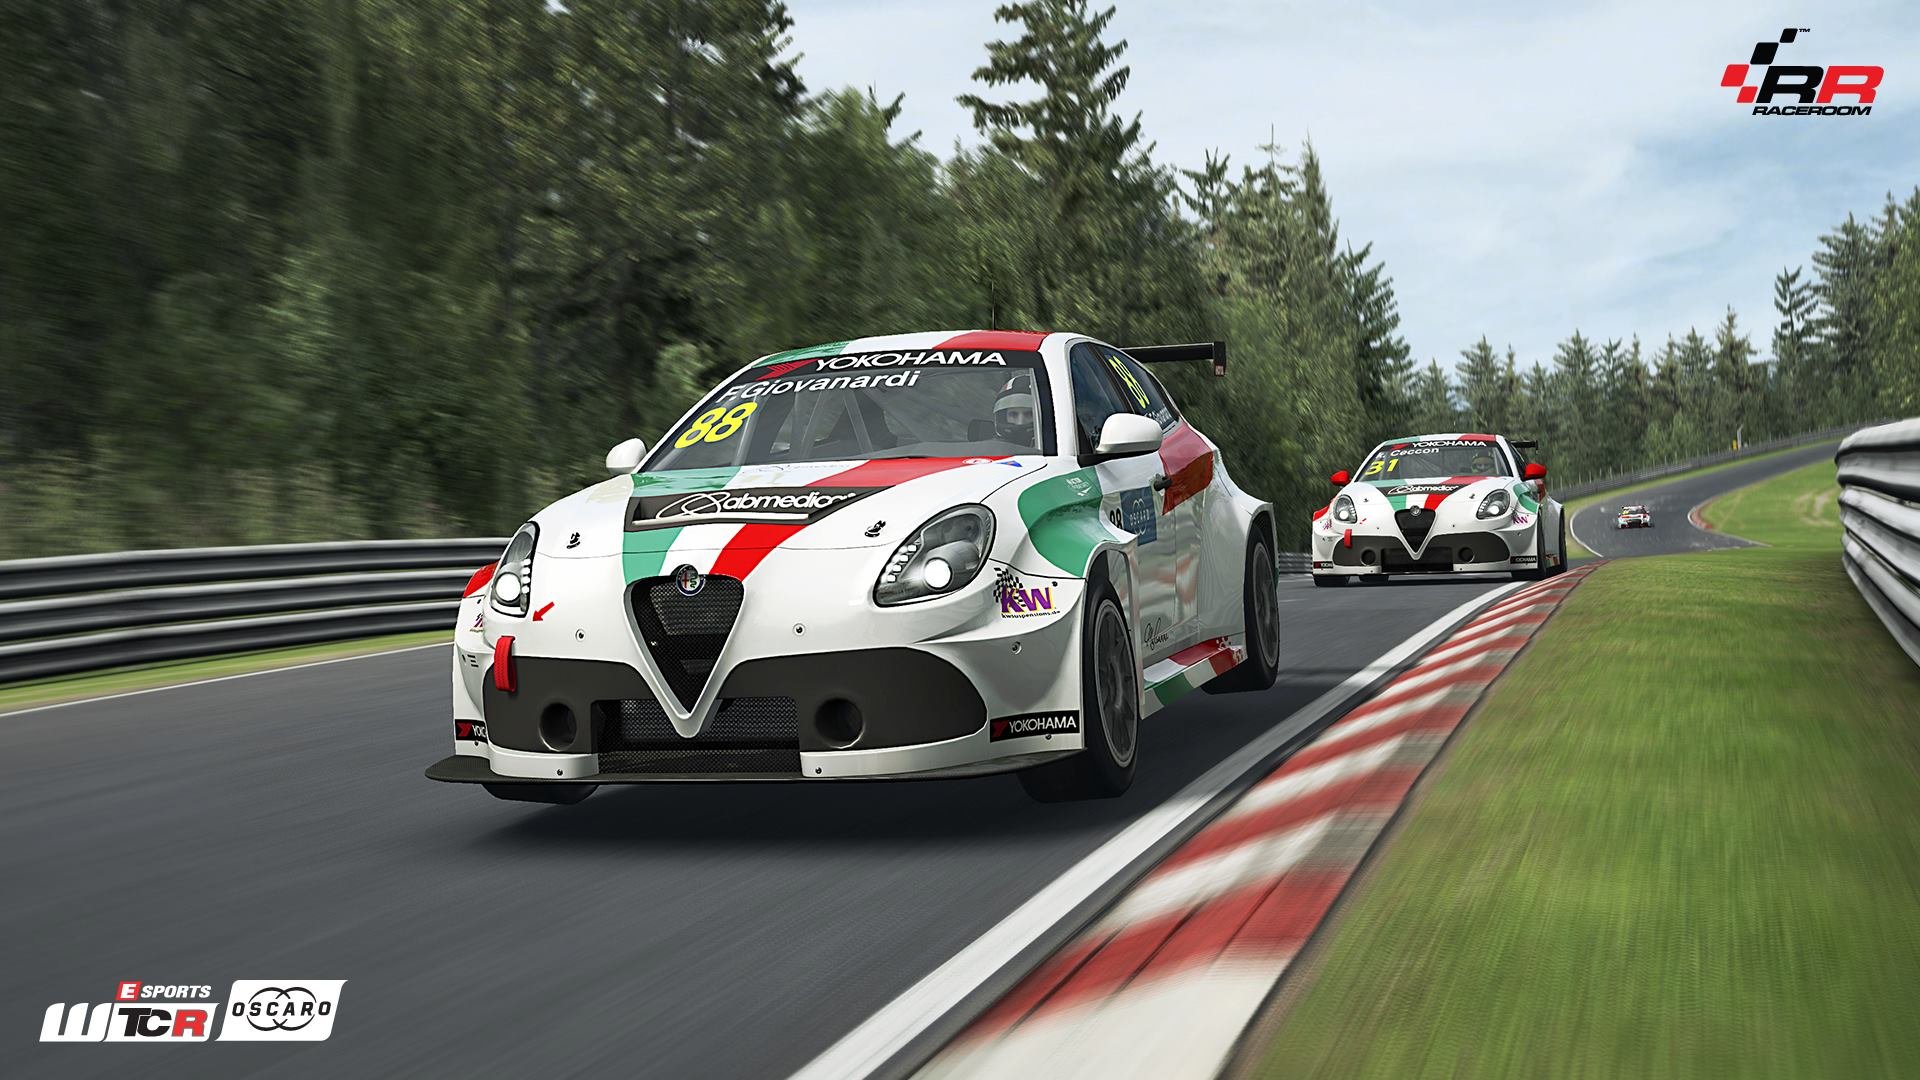 More information about "In arrivo le FIA WTCR in RaceRoom, primi screens di anteprima"